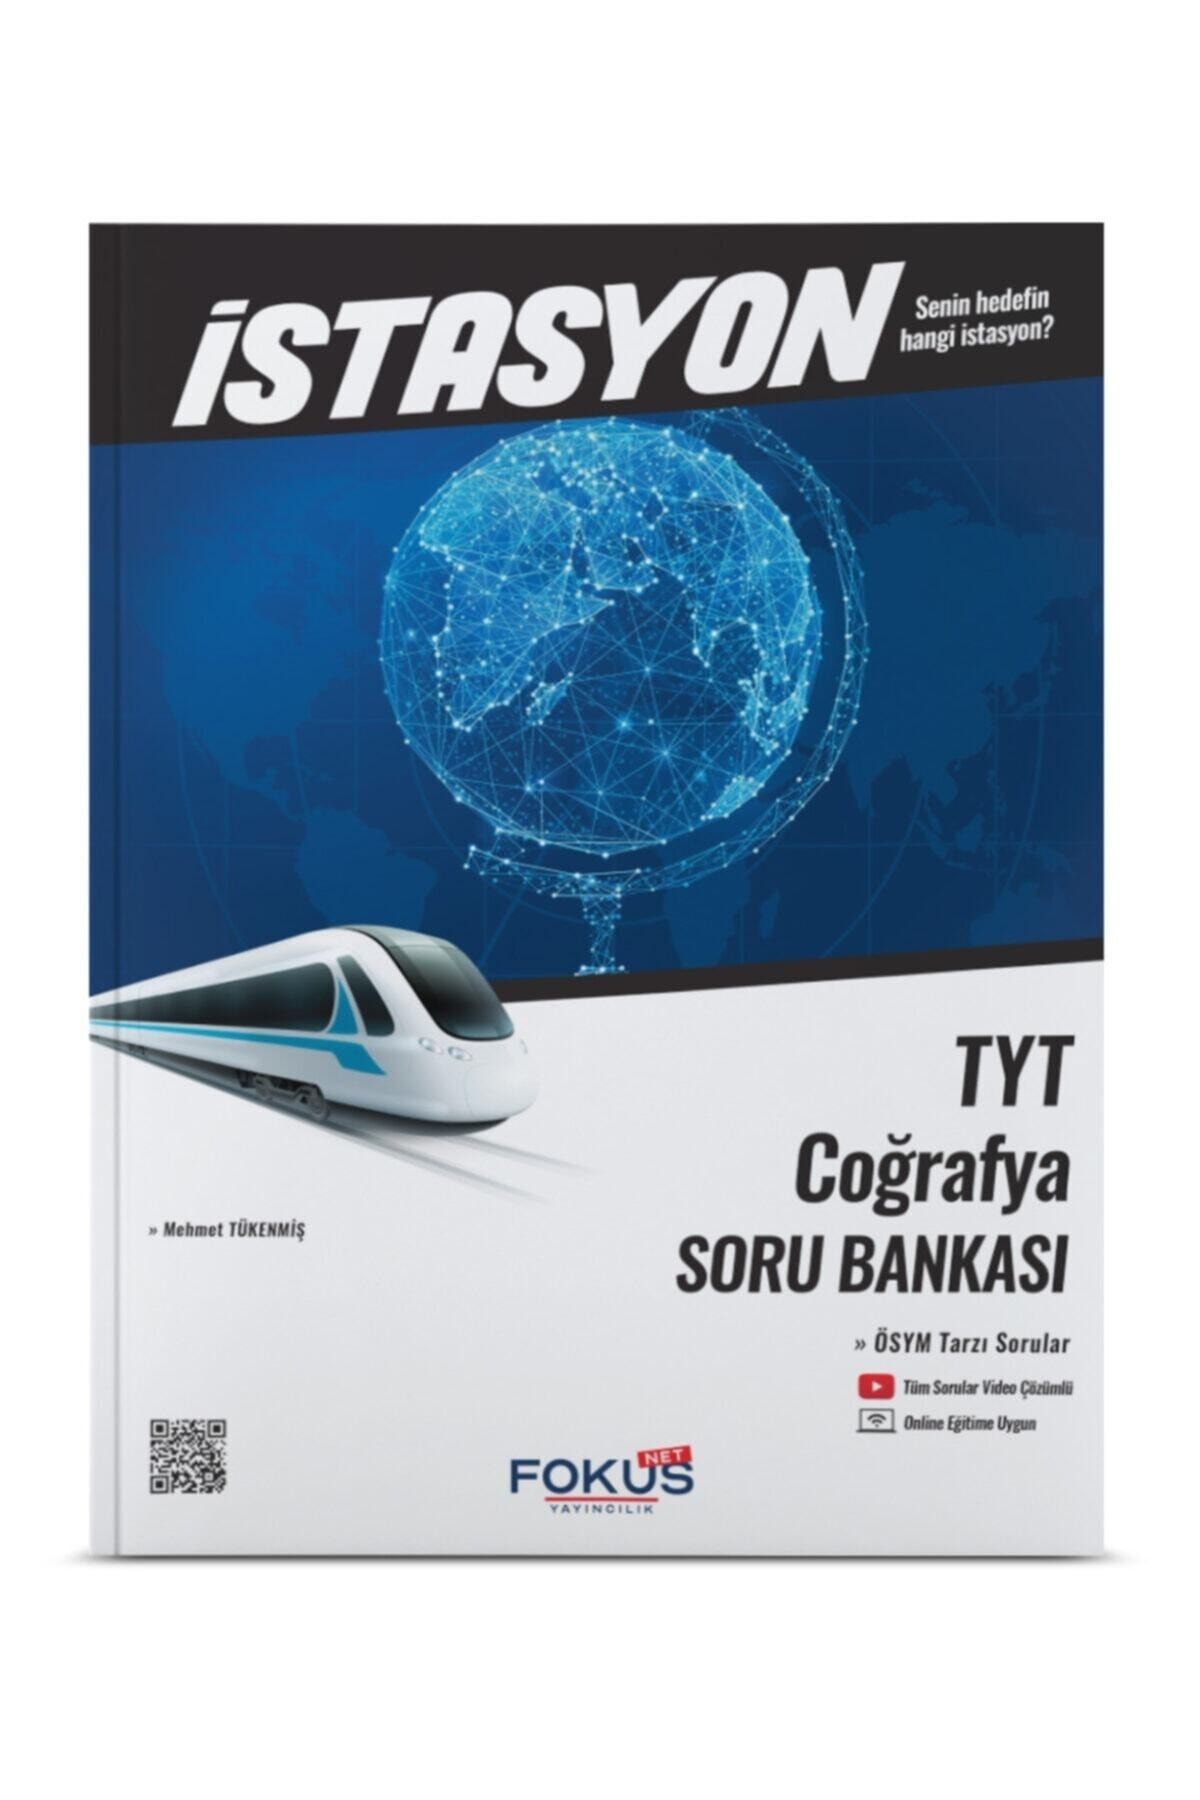 Fokus Yayınları Focus Yayınları Istanyon Serisi Tyt Coğrafya Soru Bankası